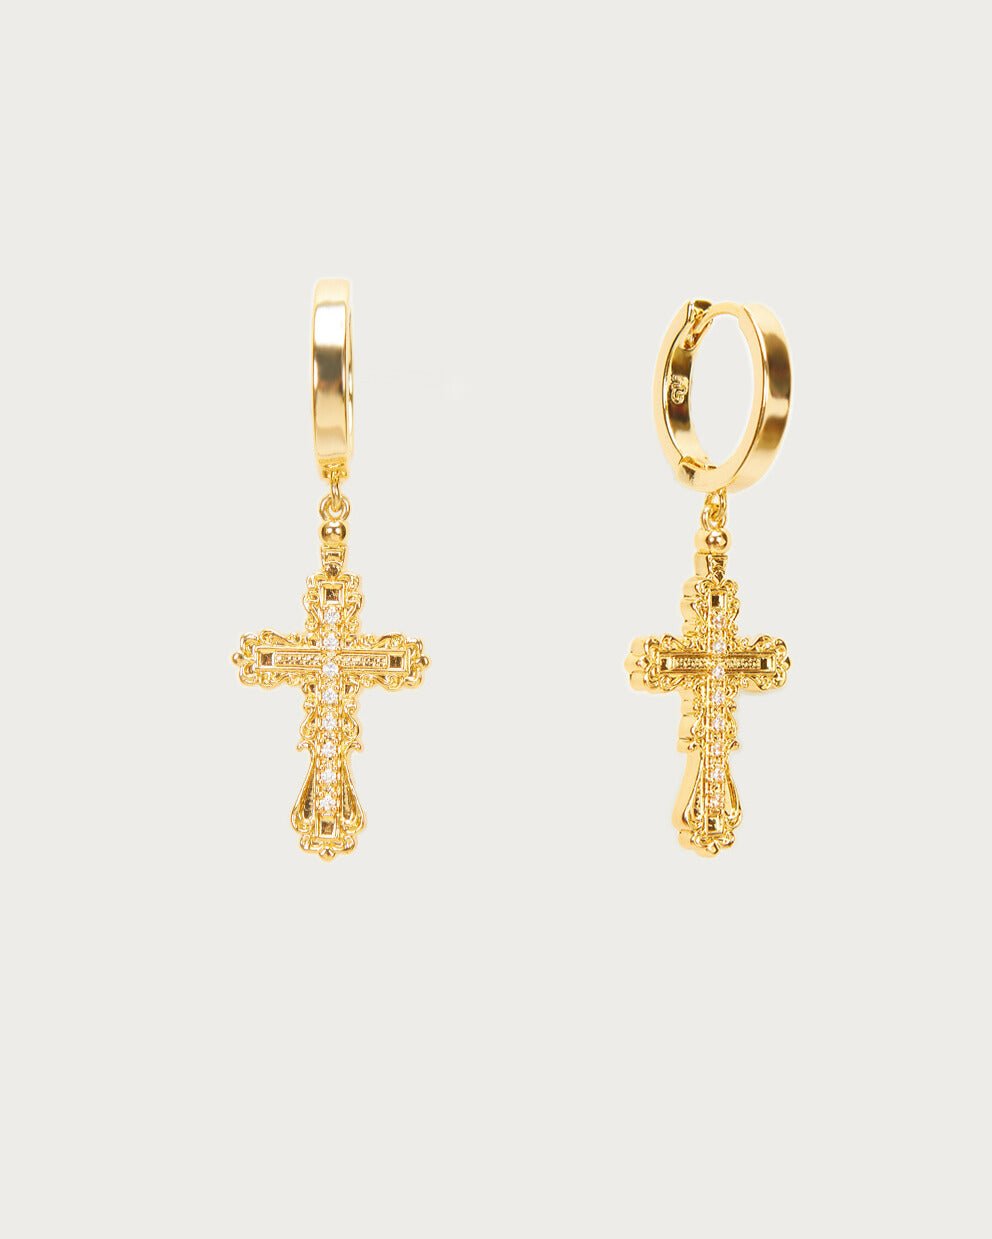 Everette Cross Earrings in Gold